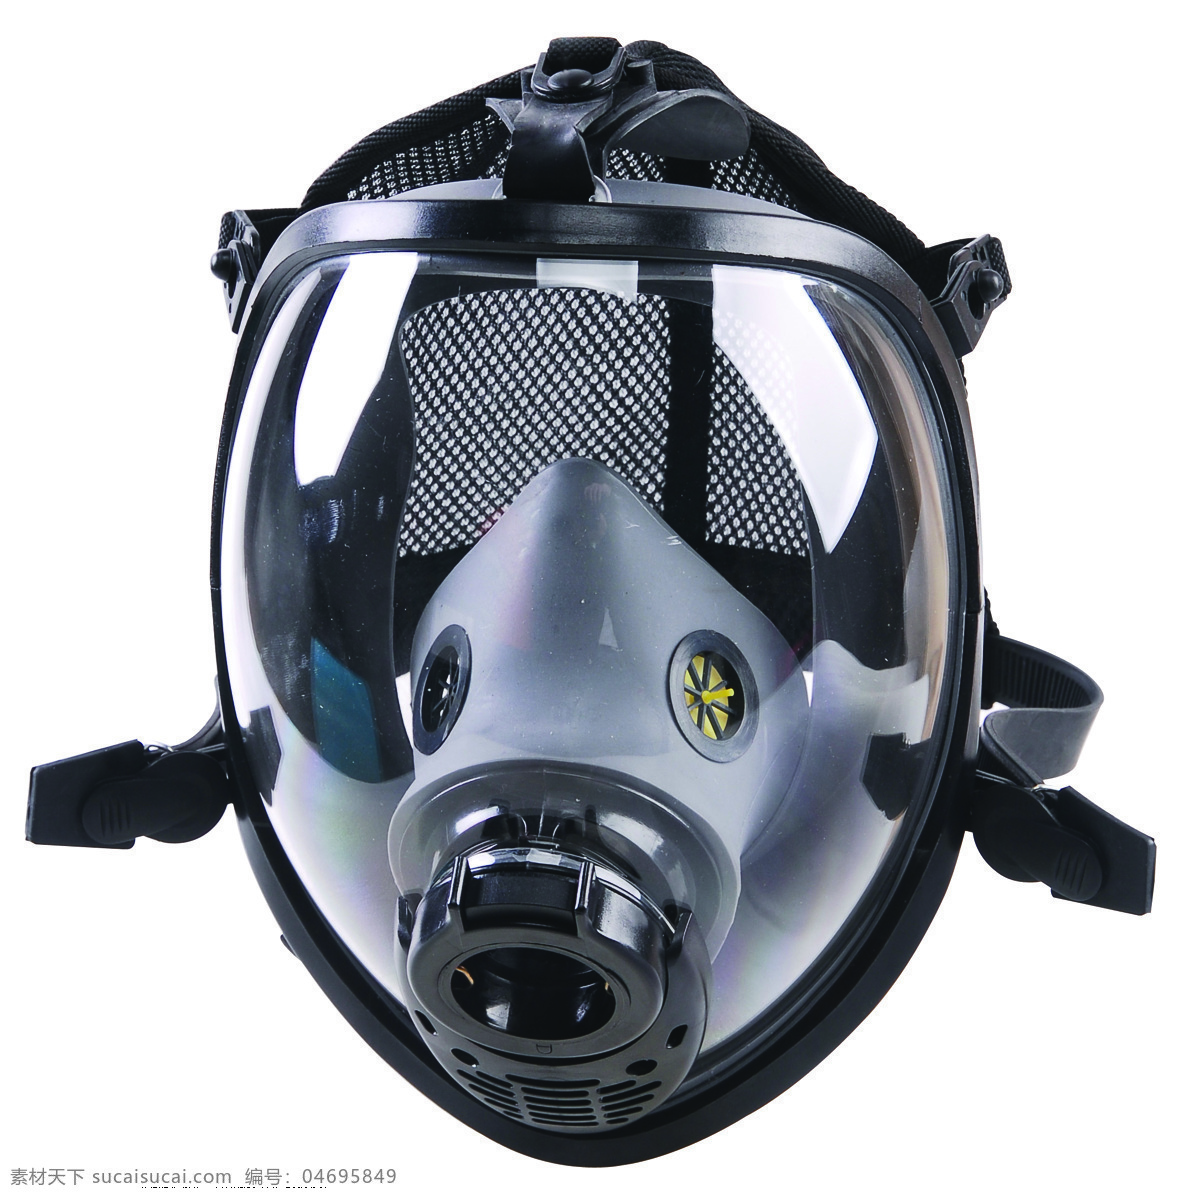 防毒面具 面具 防护罩 面罩 防护 防毒 氧气罩 罩子 面护 面部护理 猪嘴 头罩 头护 救护 军事武器 现代科技